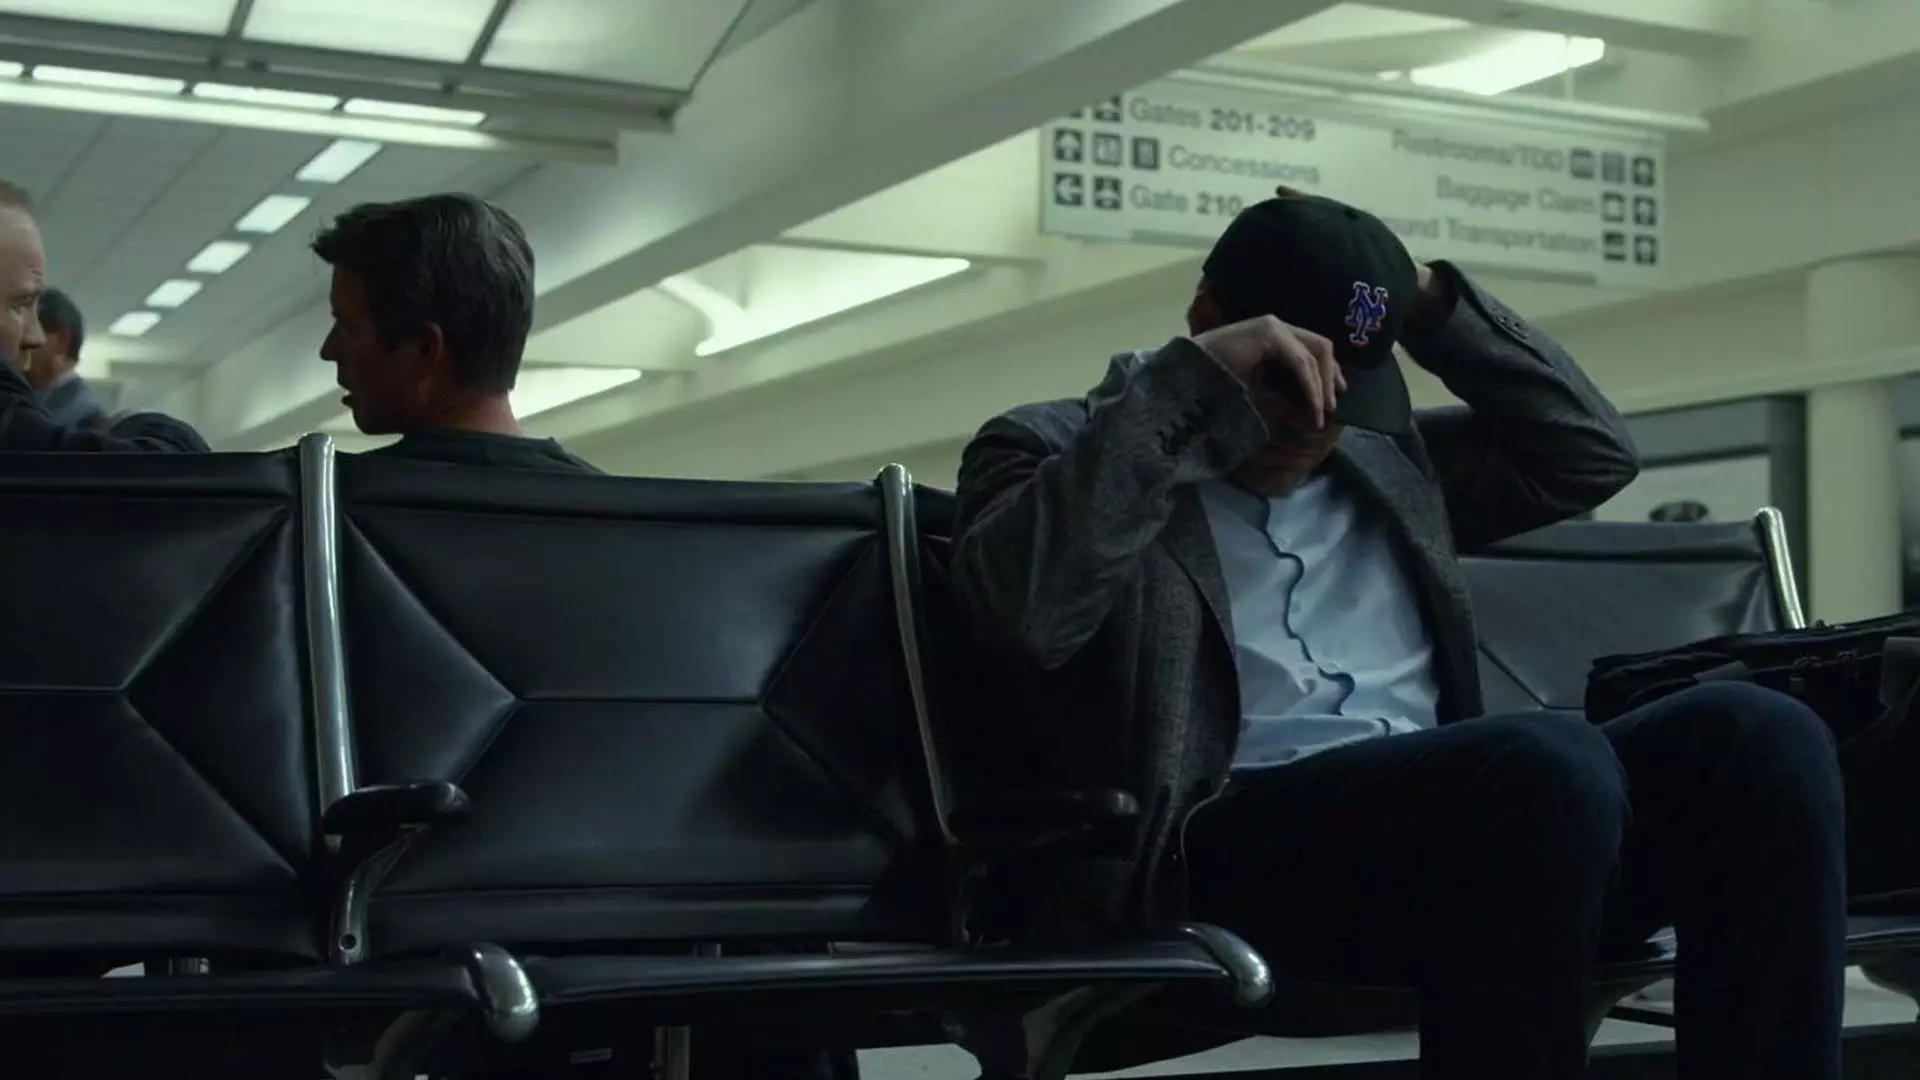 بن افلک در فرودگاه در فیلم Gone Girl